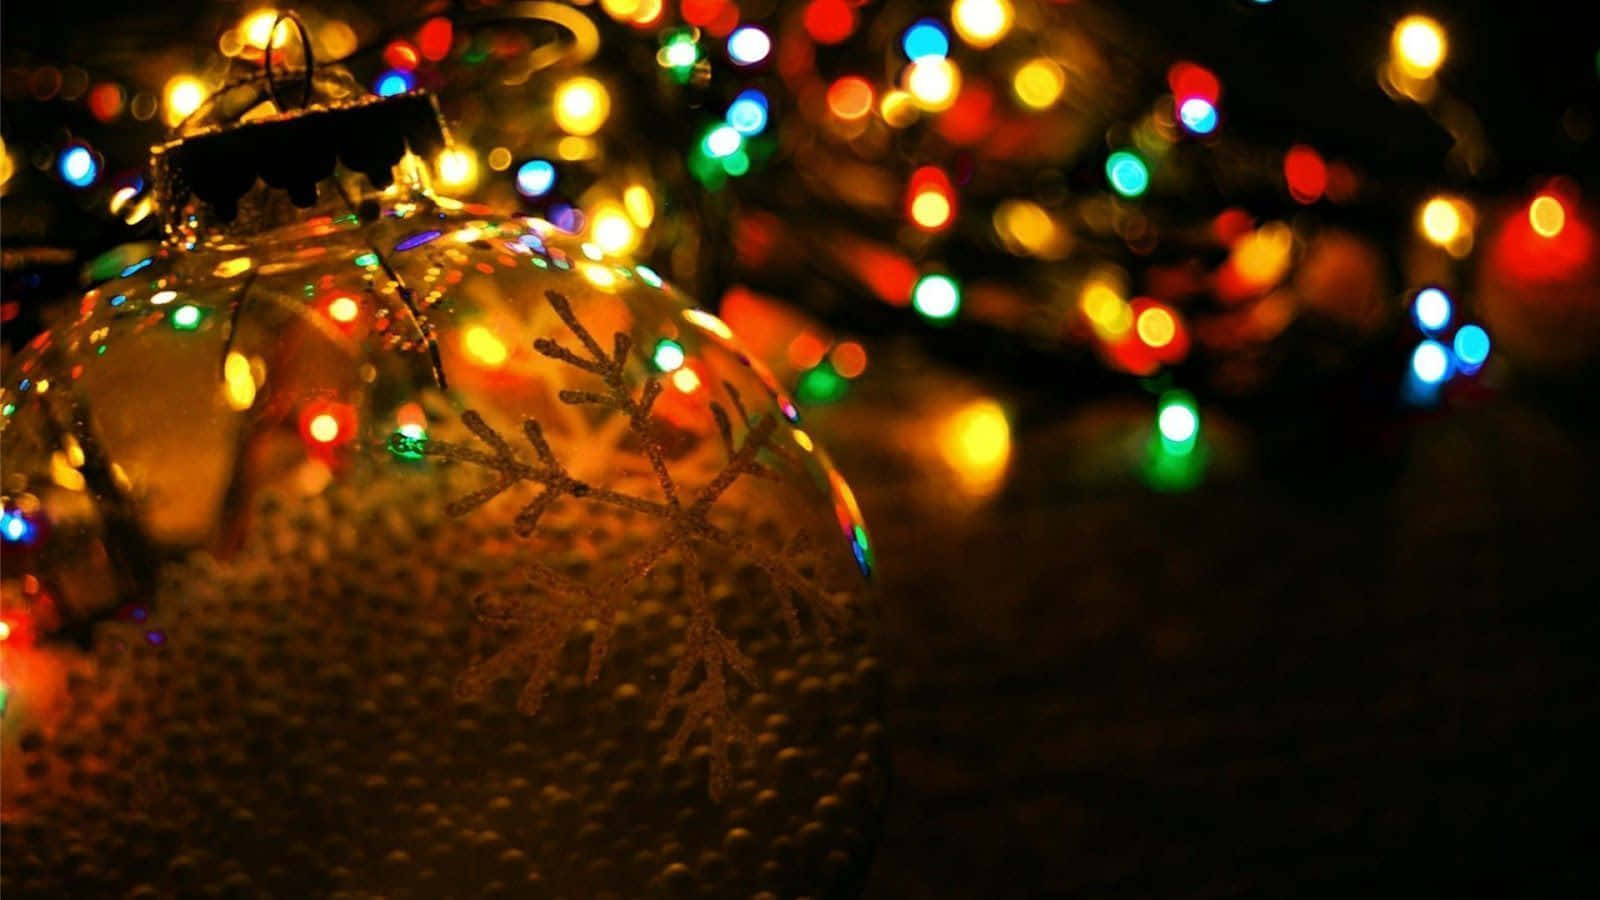 Imagende Luces De Navidad Y Ornamento De Copo De Nieve.